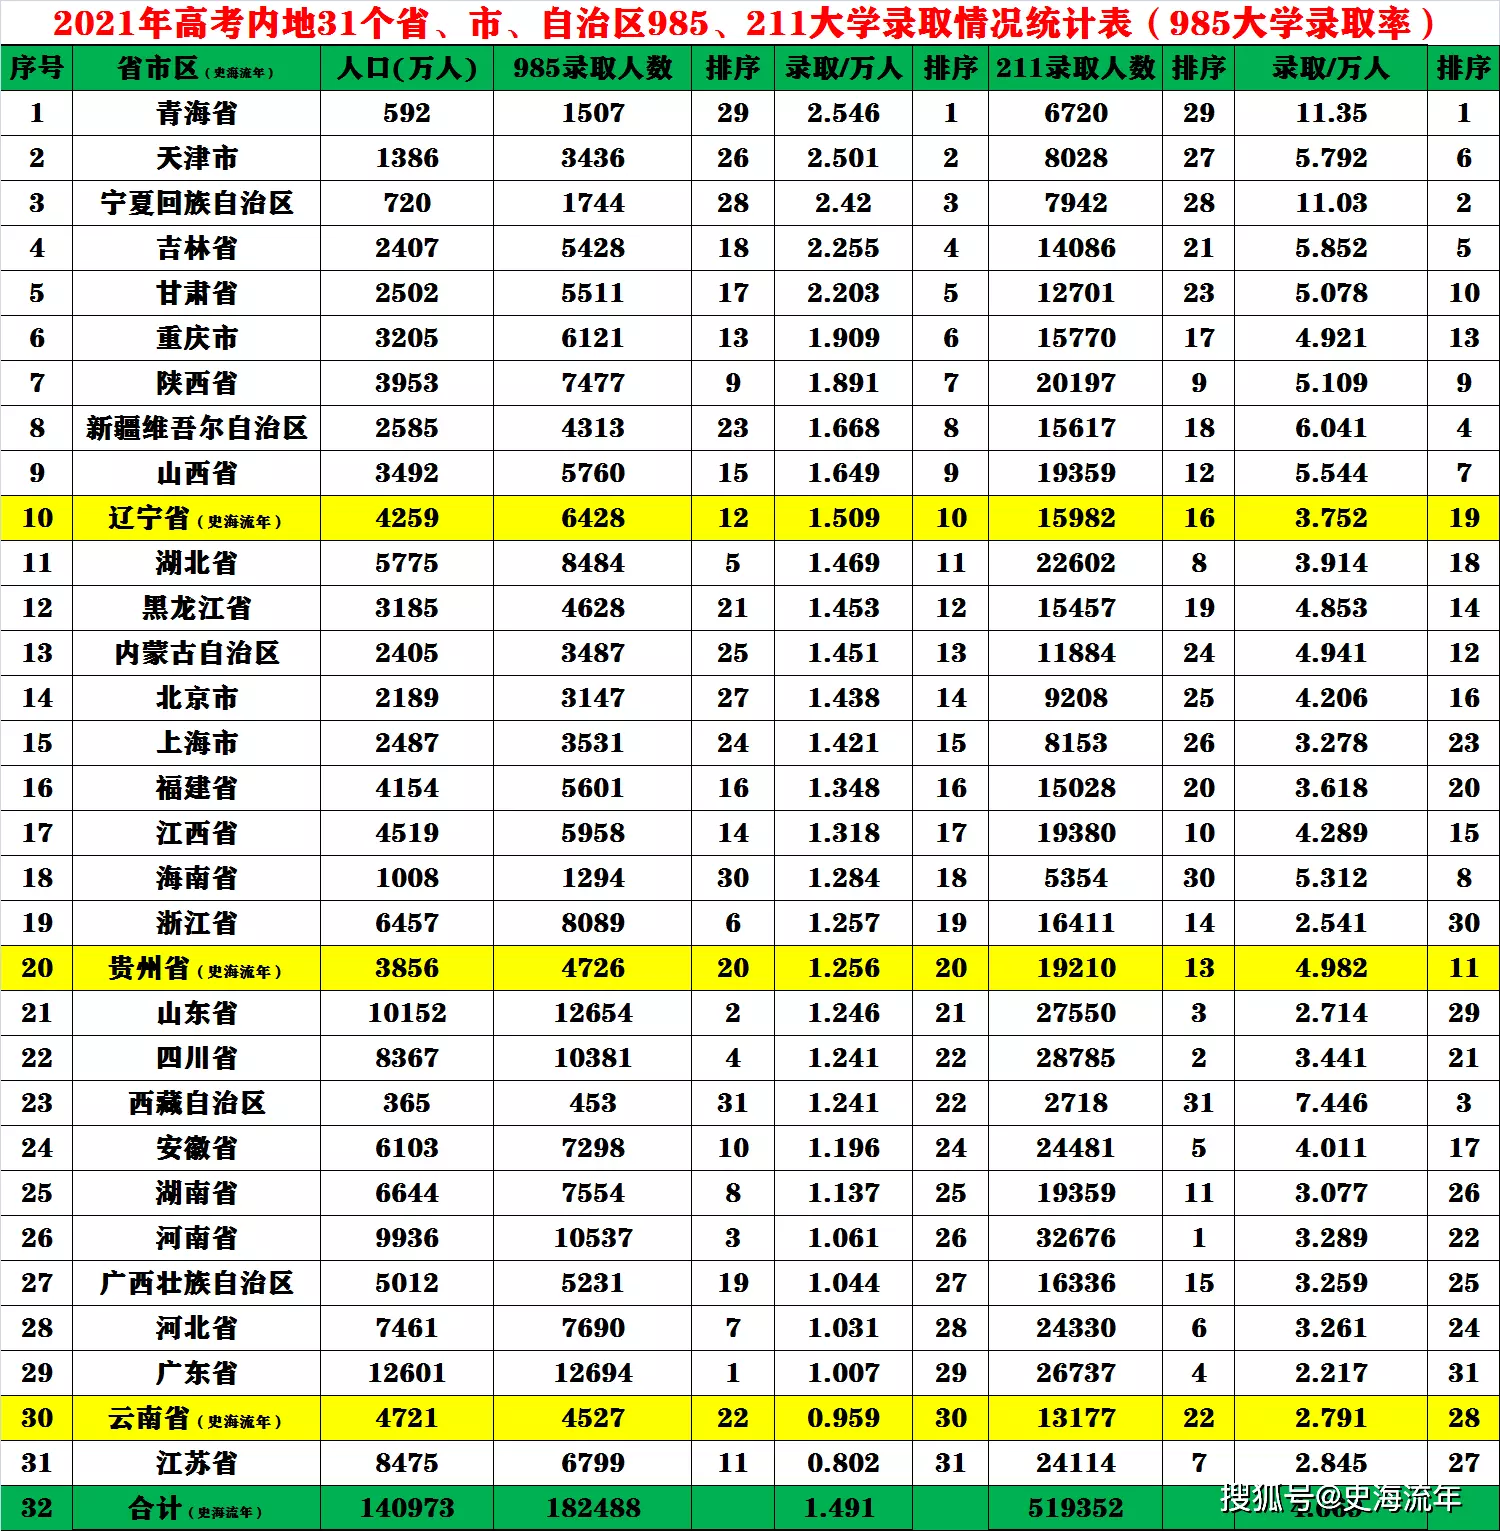 6、中国各省人口排行榜年:中国人口排名 省份？